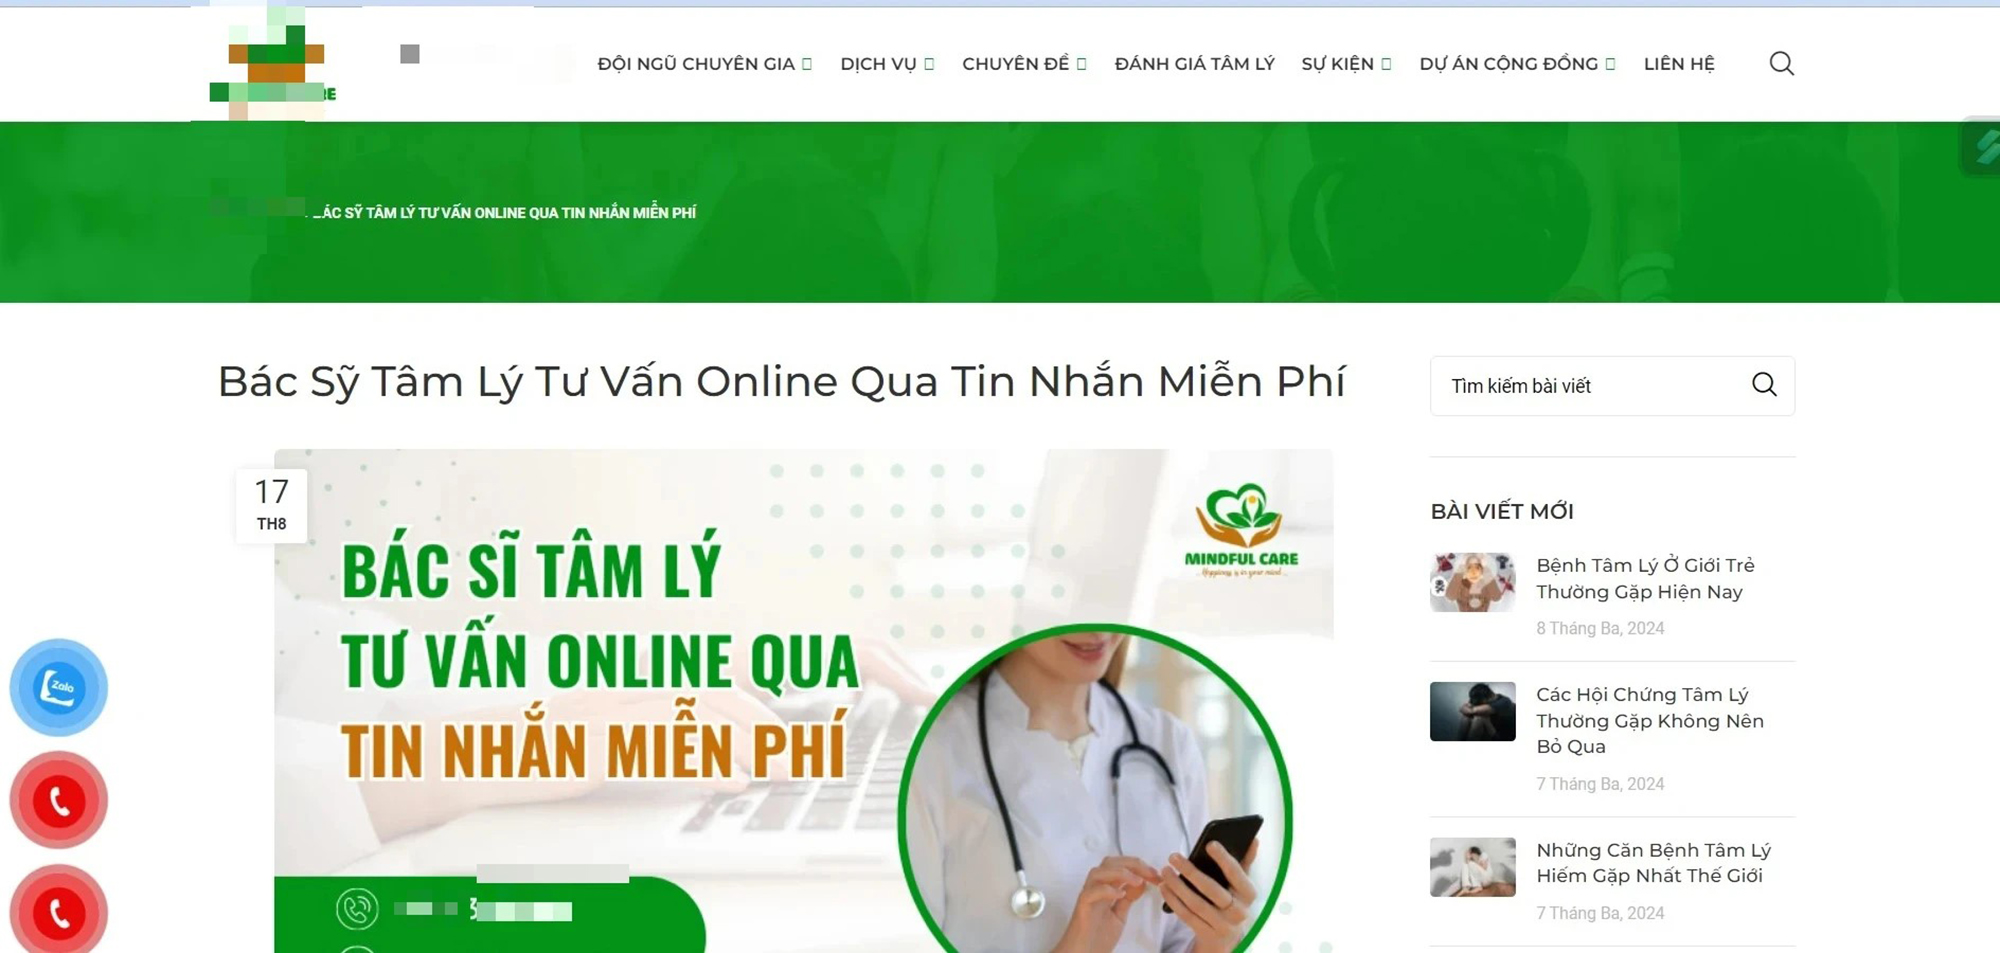 Một trung tâm đăng bài quảng cáo trên website có “bác sĩ tâm lý” tham vấn miễn phí